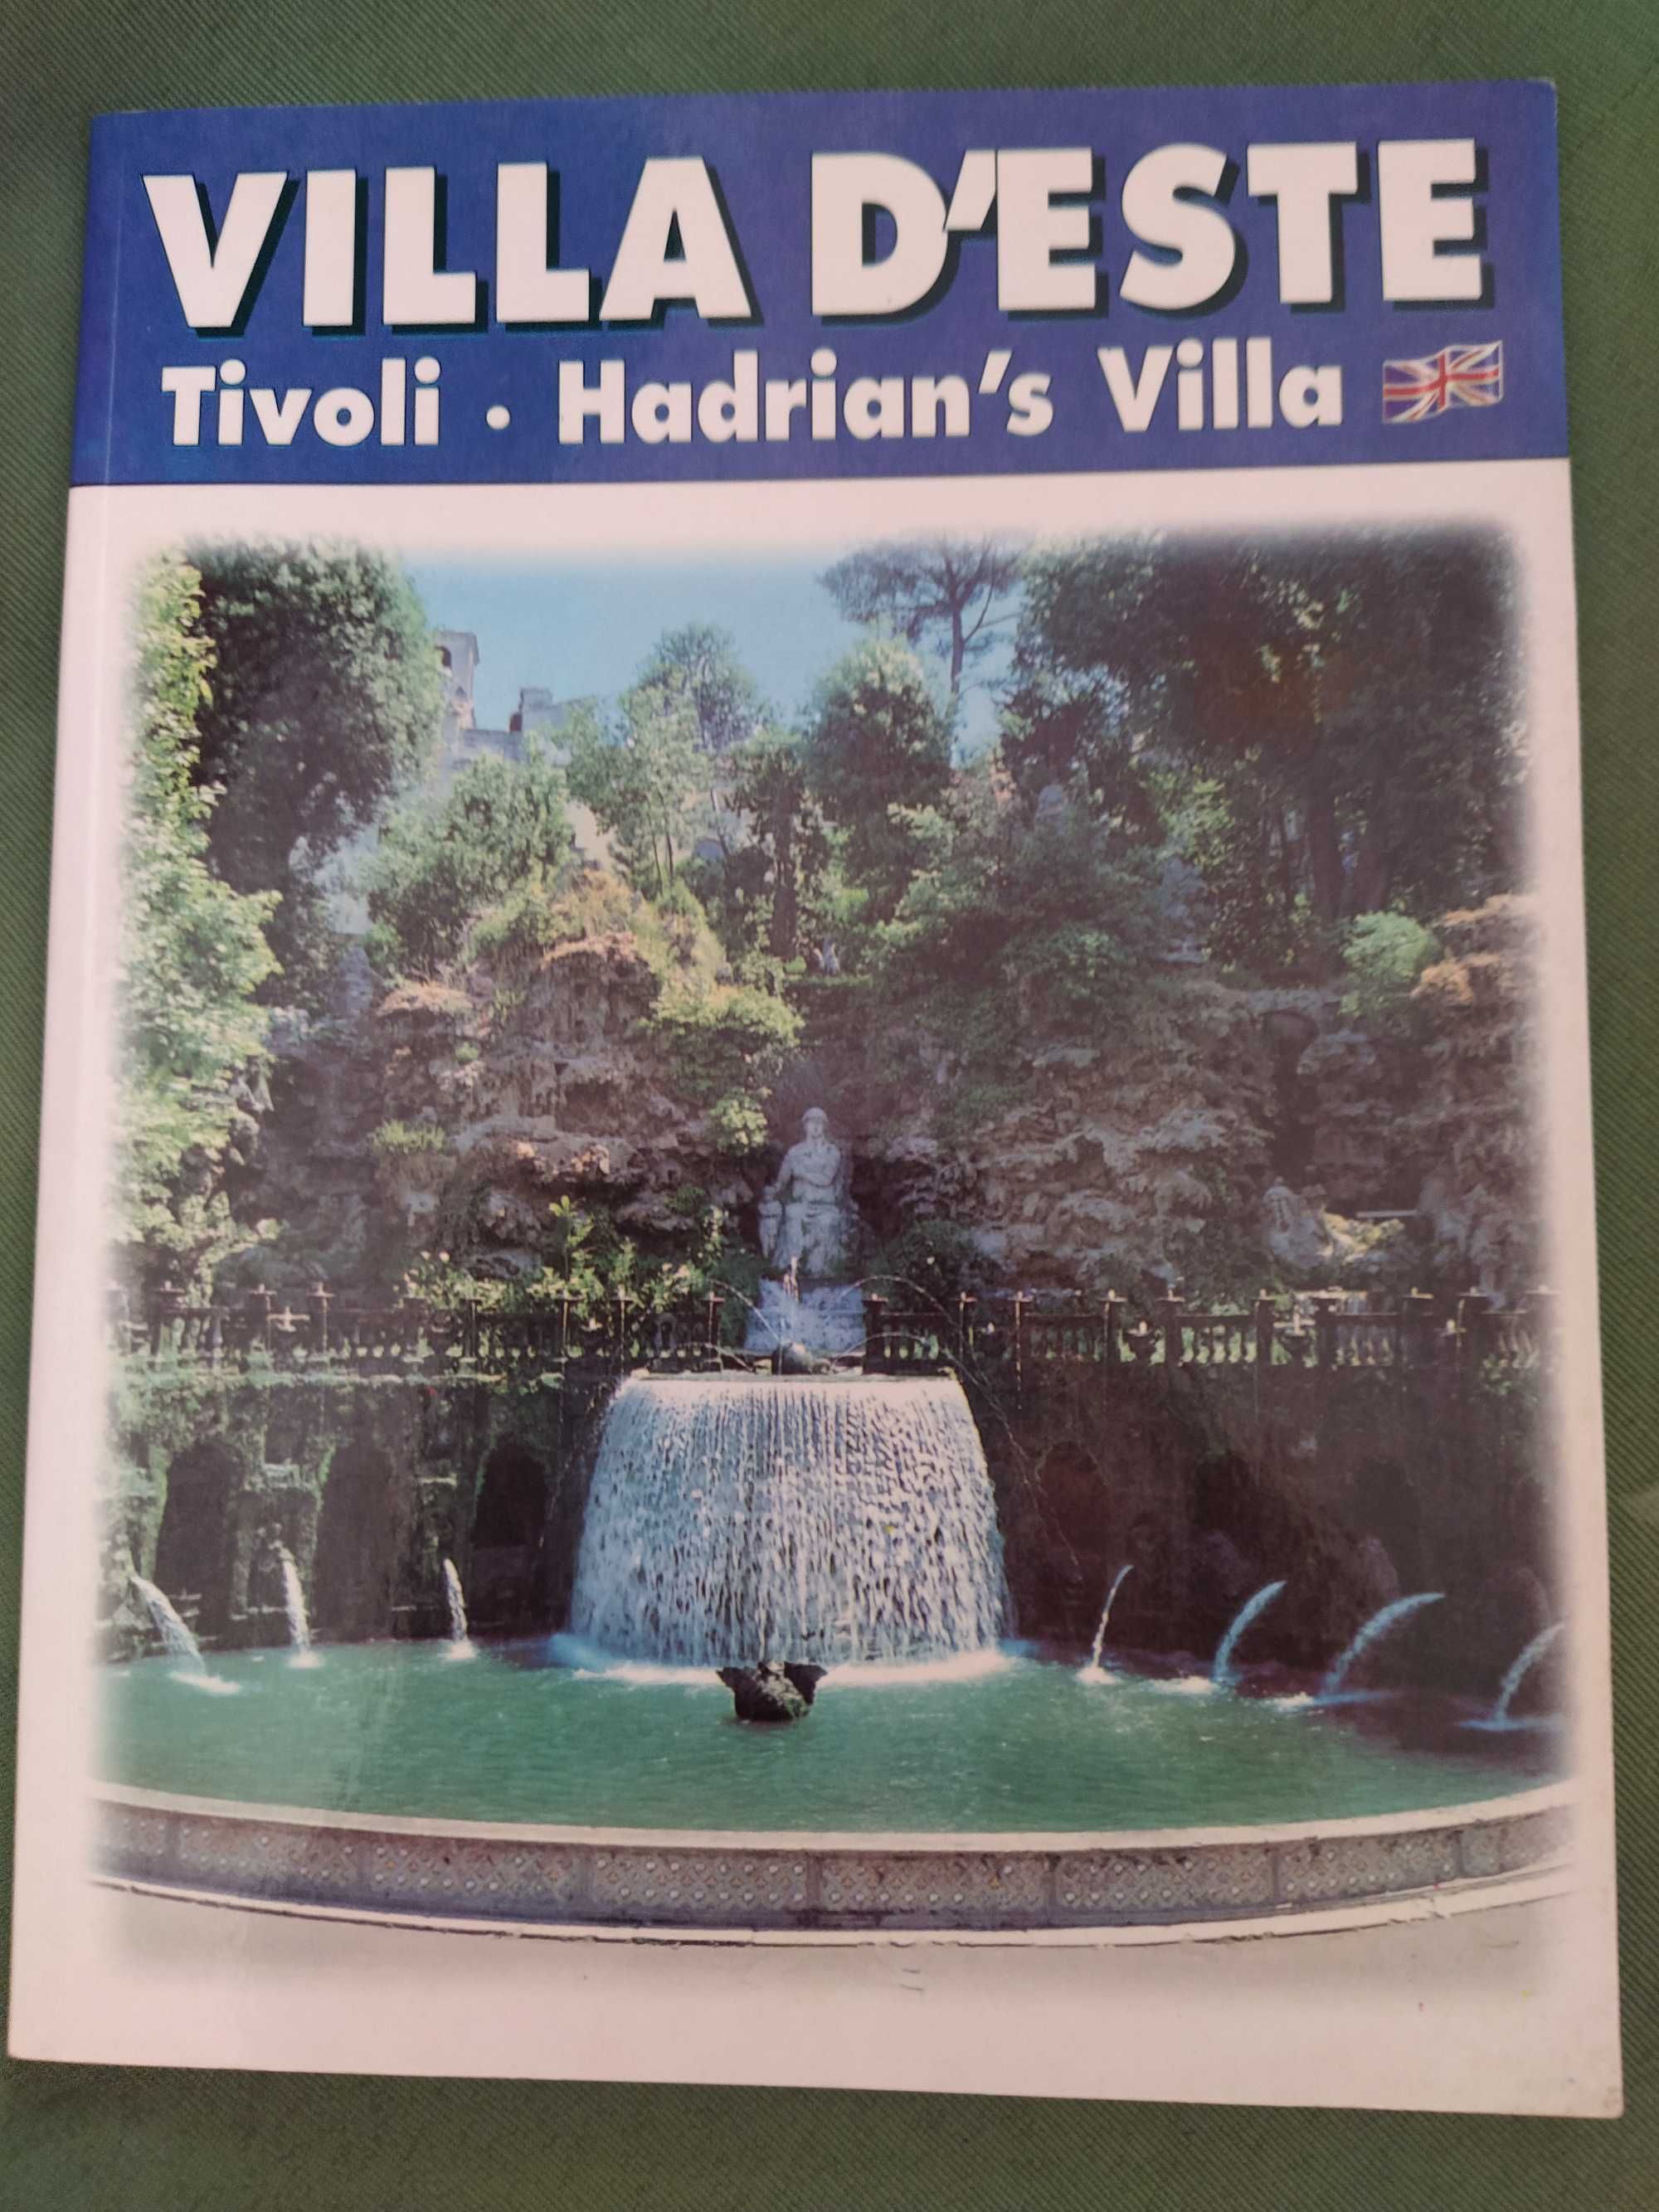 Villa d'Este - Tivoli - Hadrian's Villa - Villa Gregoriana